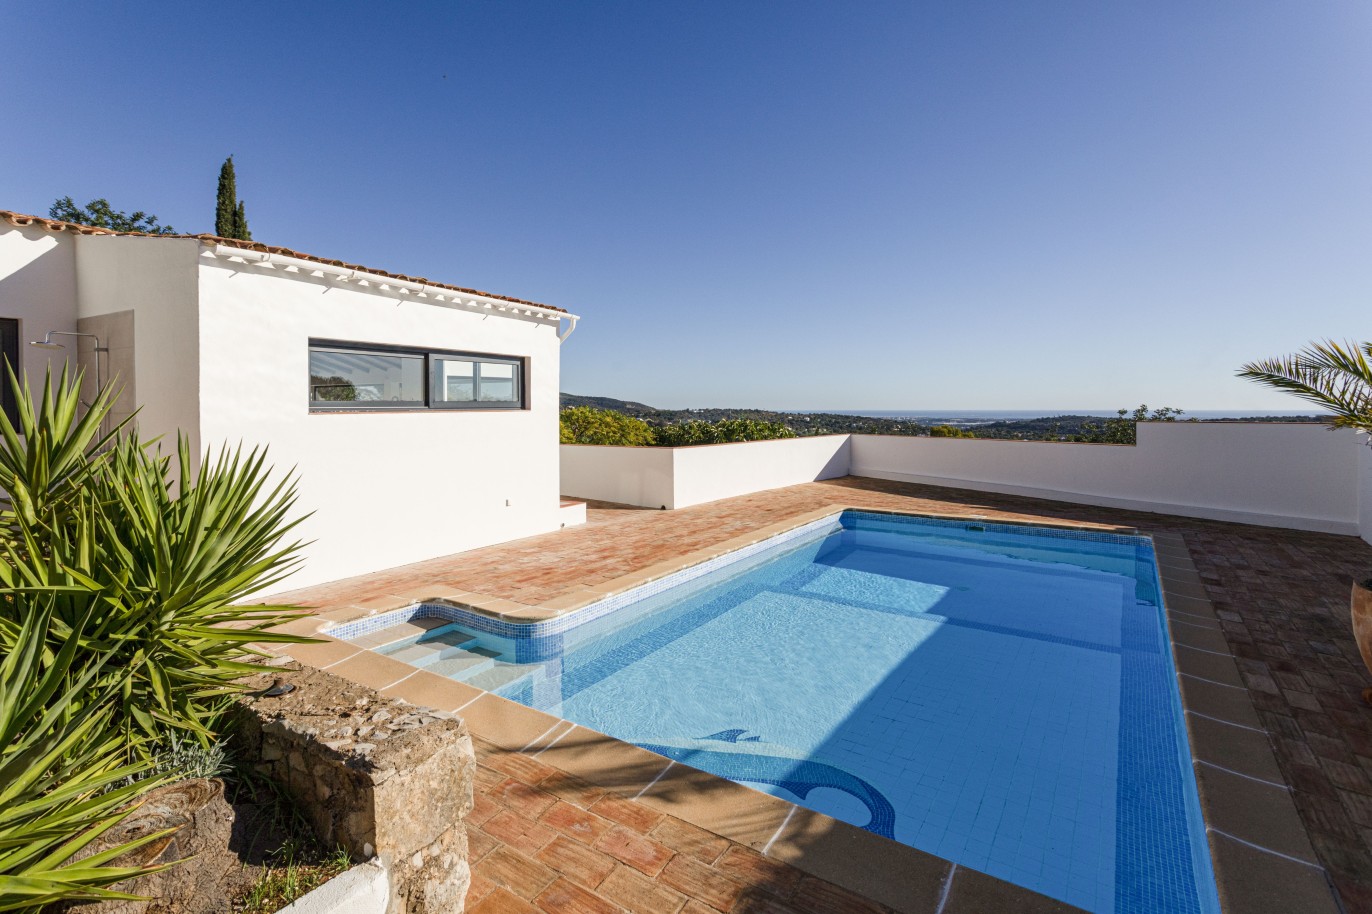 3 bedroom villa with sea view and pool, for sale in Santa Barbara, Algarve_246328